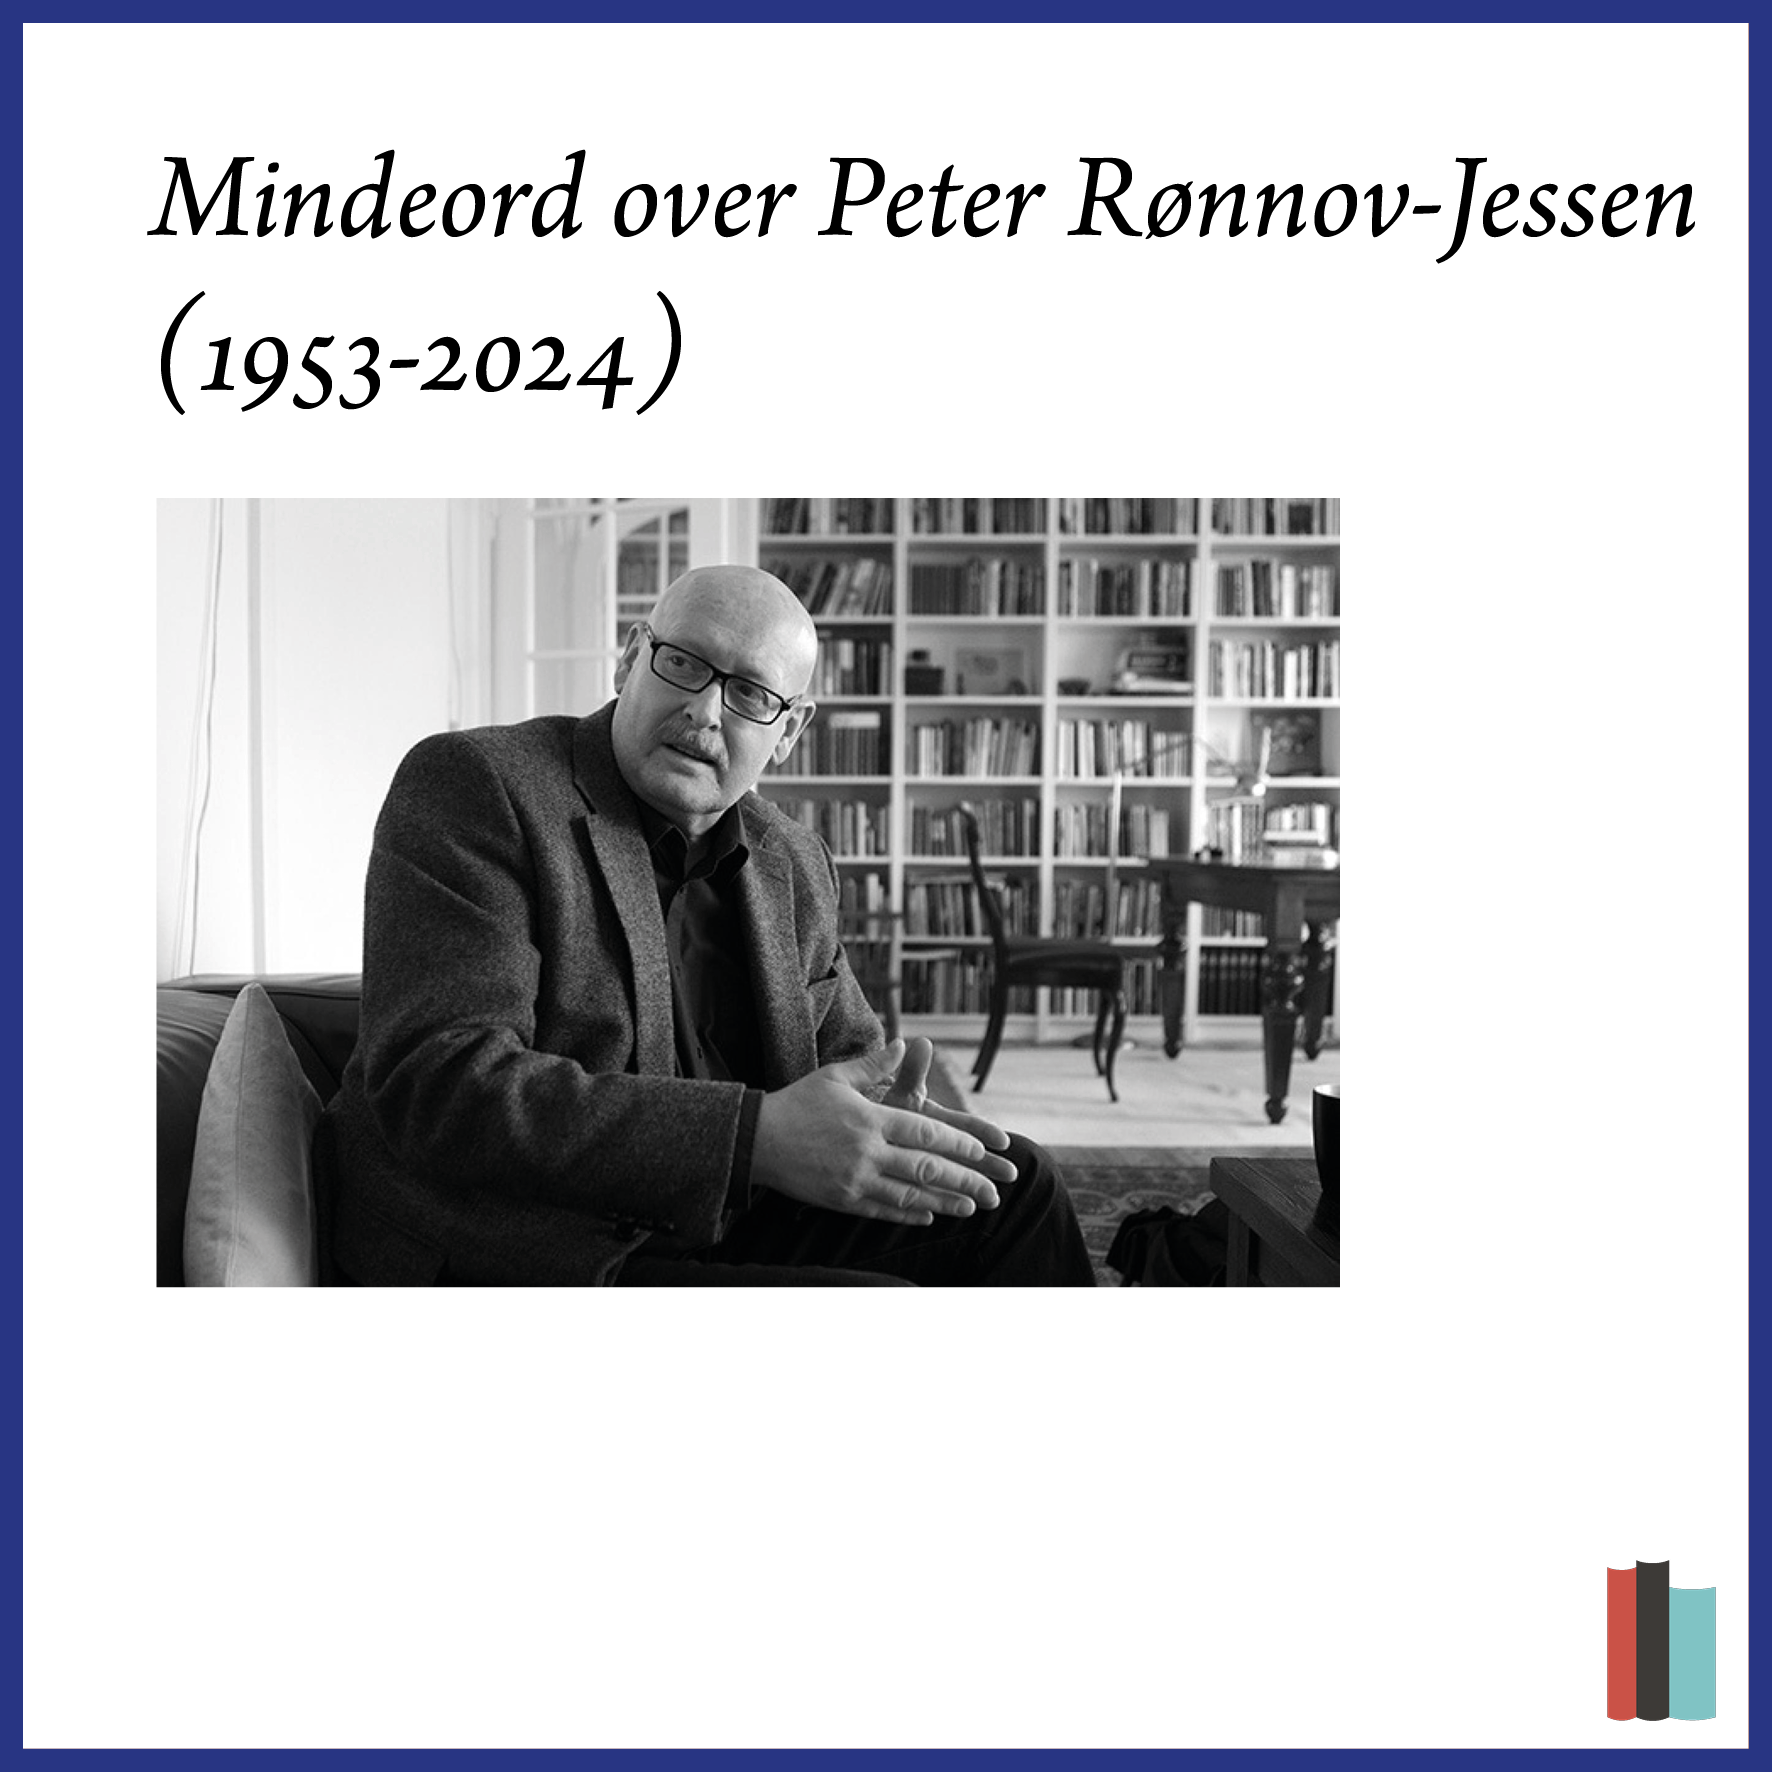 Mindeord over Peter Rønnov-Jessen 